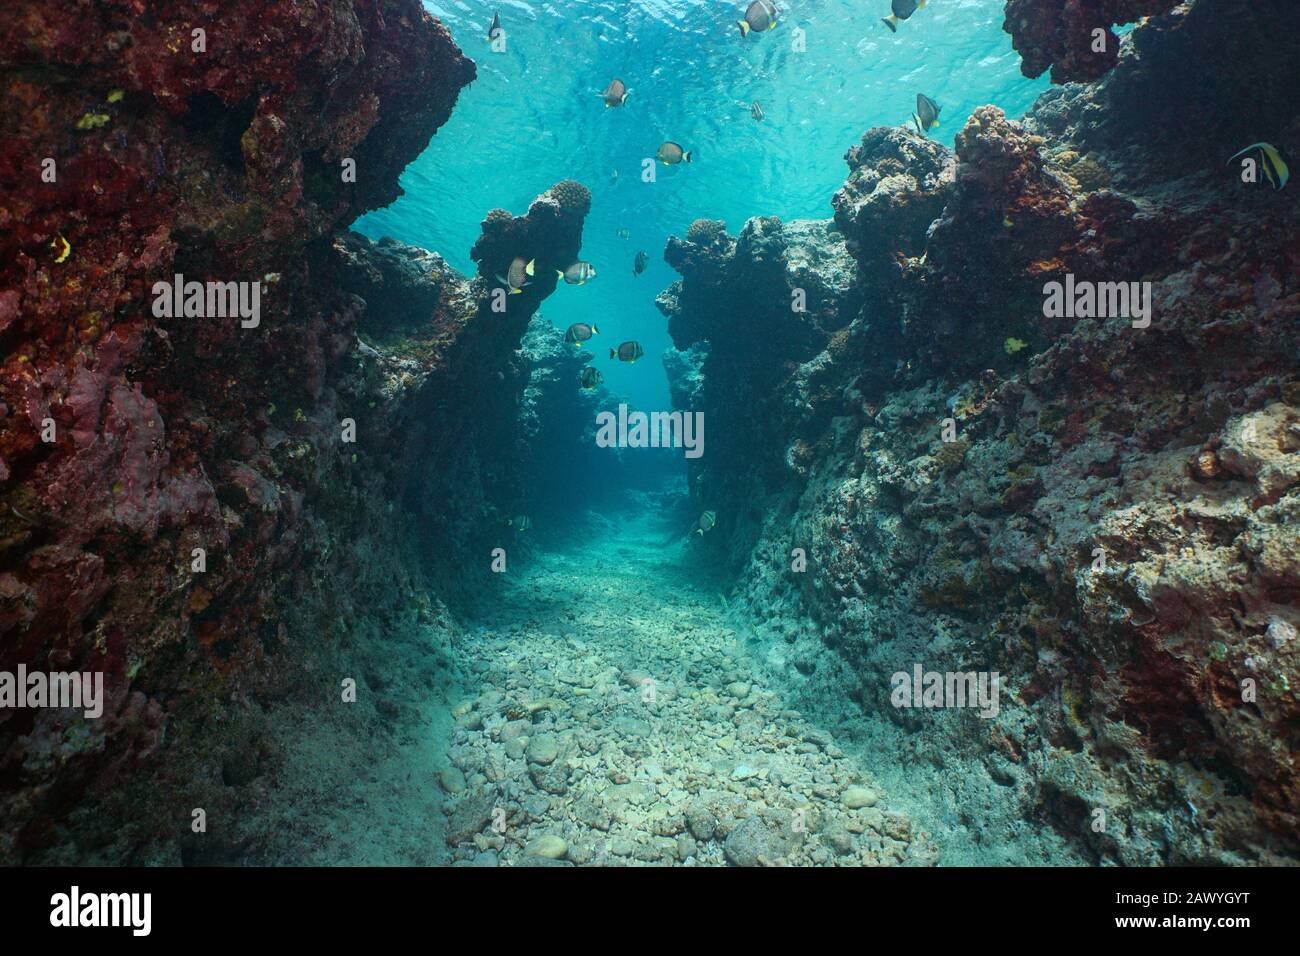 Paisaje marino submarino, una estrecha trinchera con algunos peces en un arrecife rocoso erosionado por el oleaje, el océano Pacífico, la Polinesia Francesa, Oceanía Foto de stock